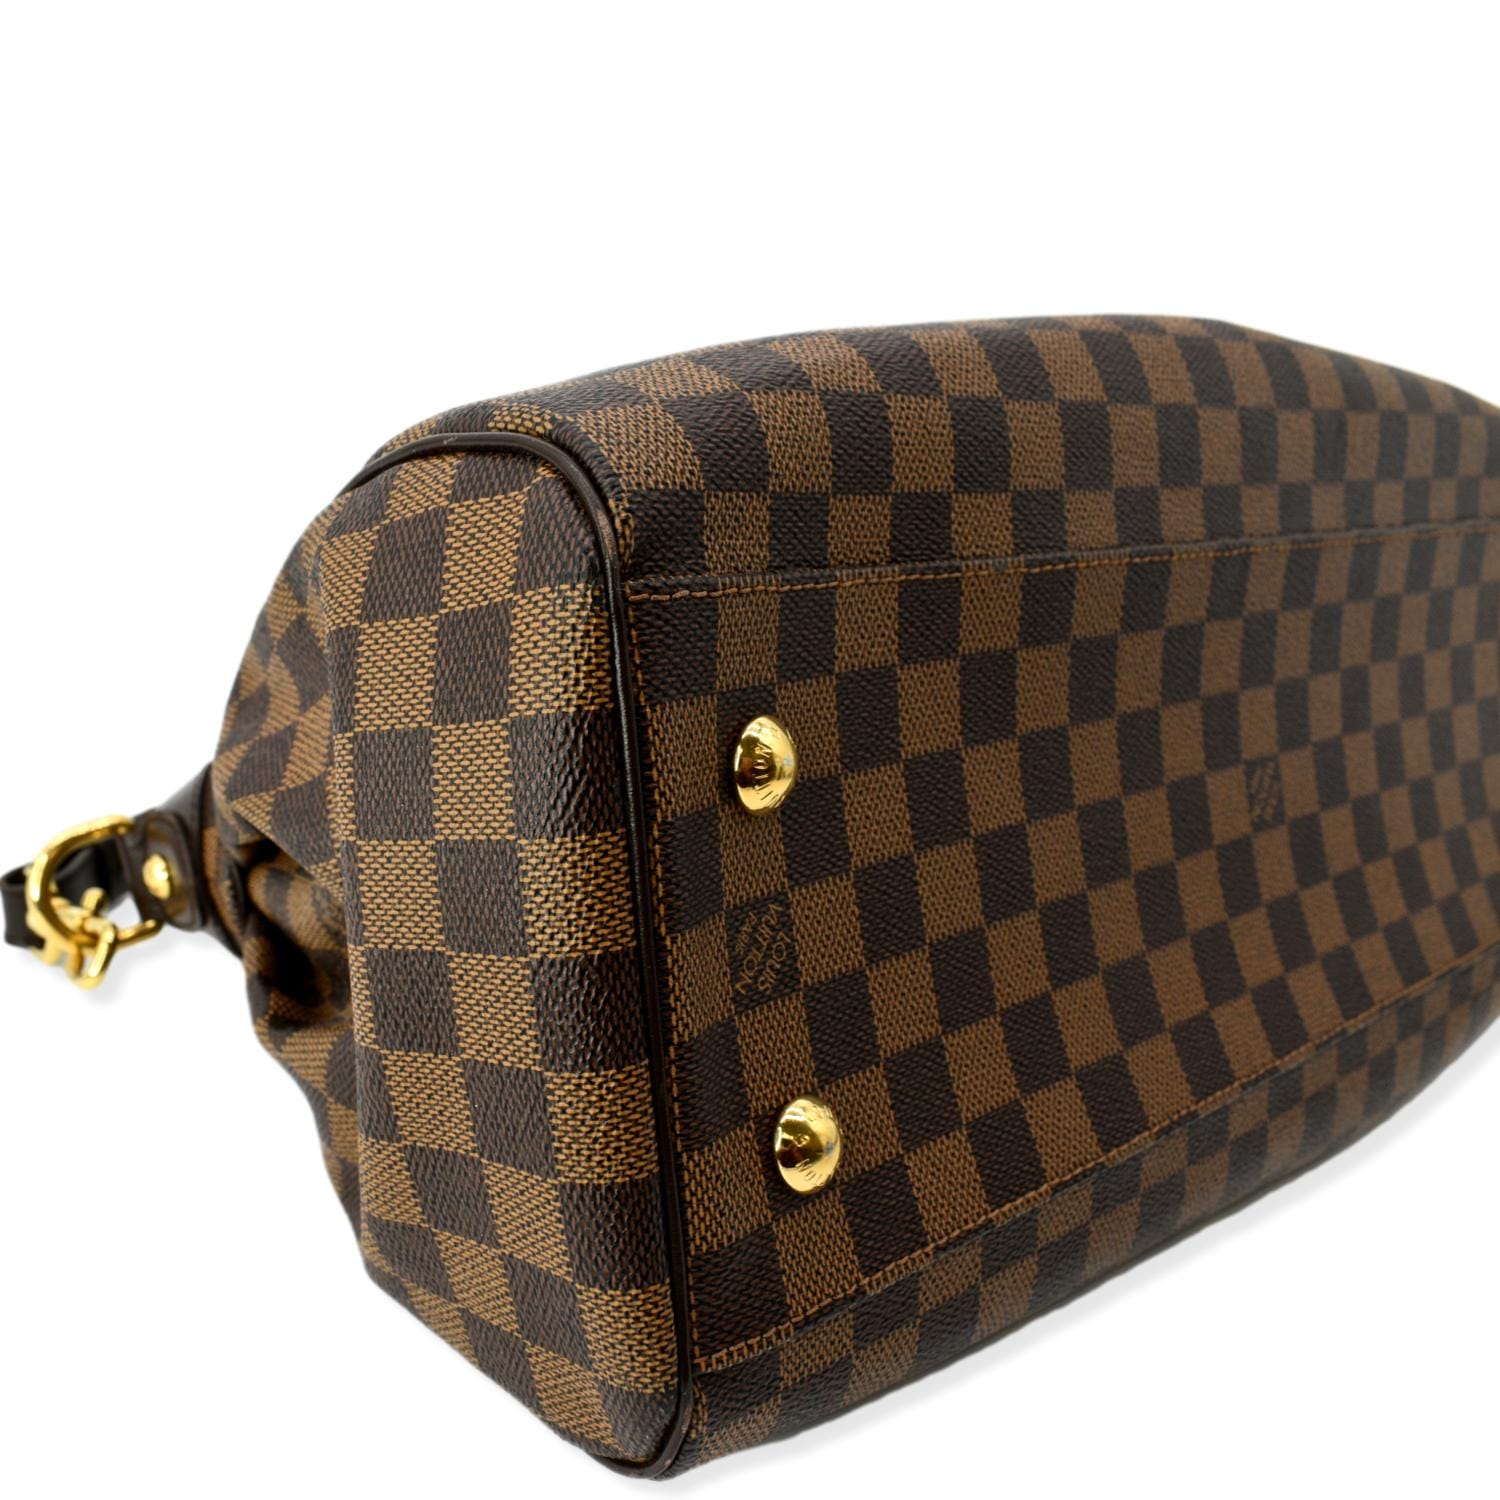 Louis Vuitton Trevi GM Damier Ebene Bag. Comes with a detachable